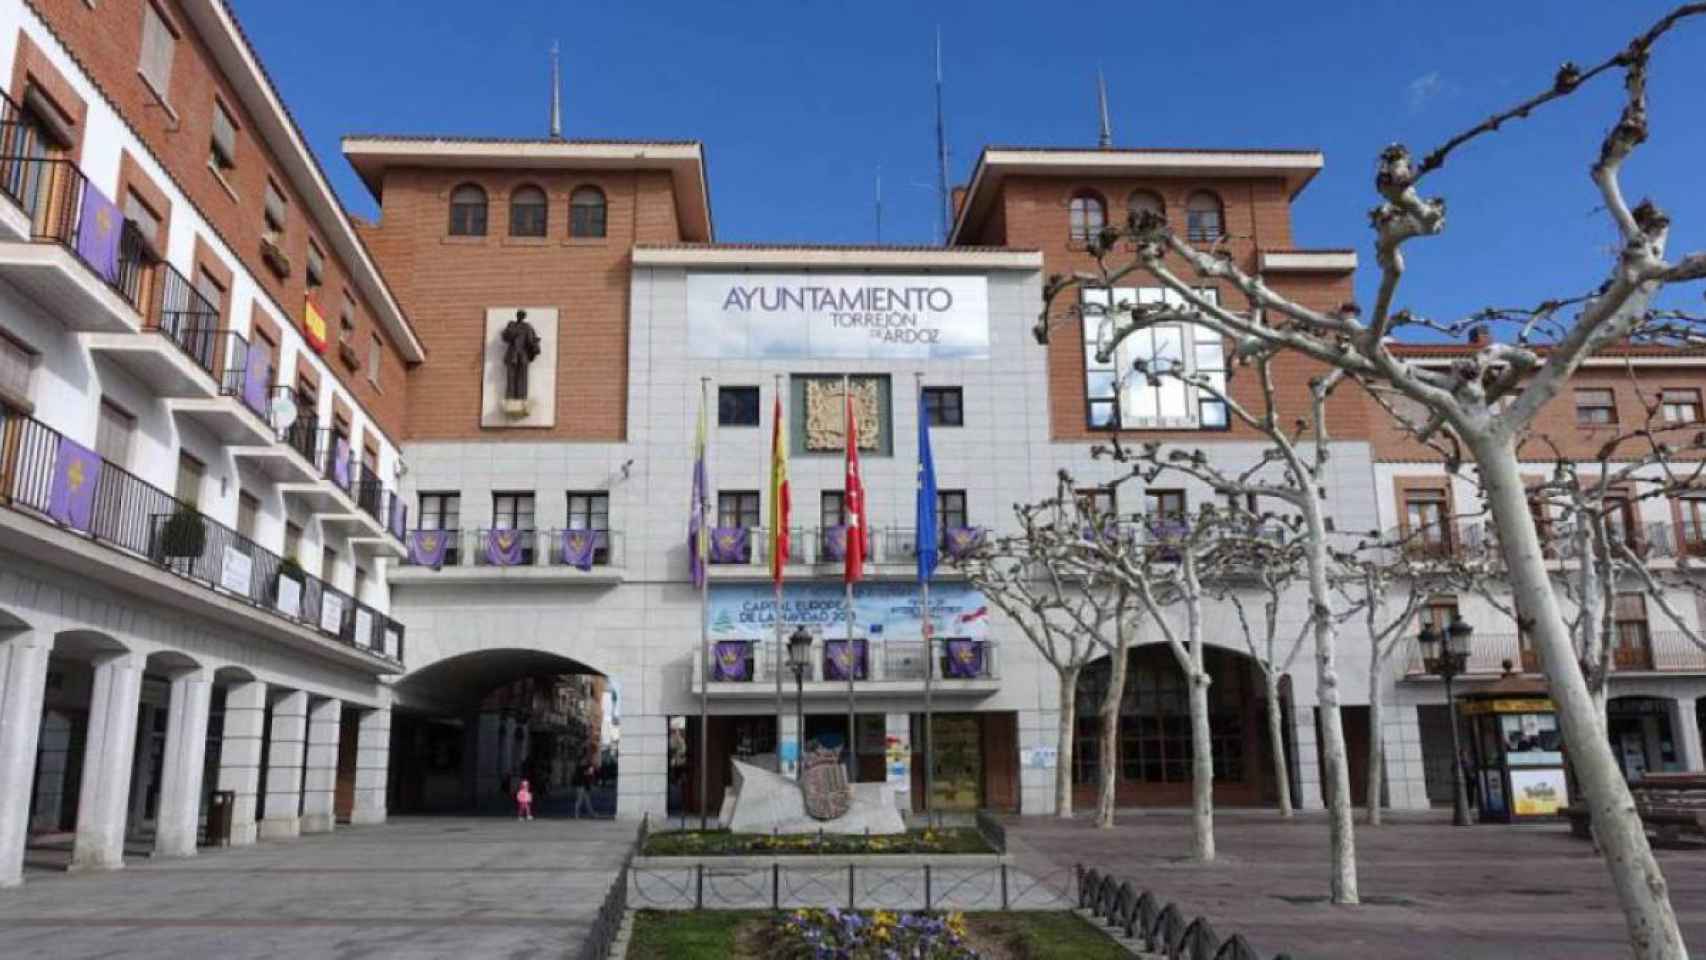 Ayuntamiento de Torrejón de Ardoz.